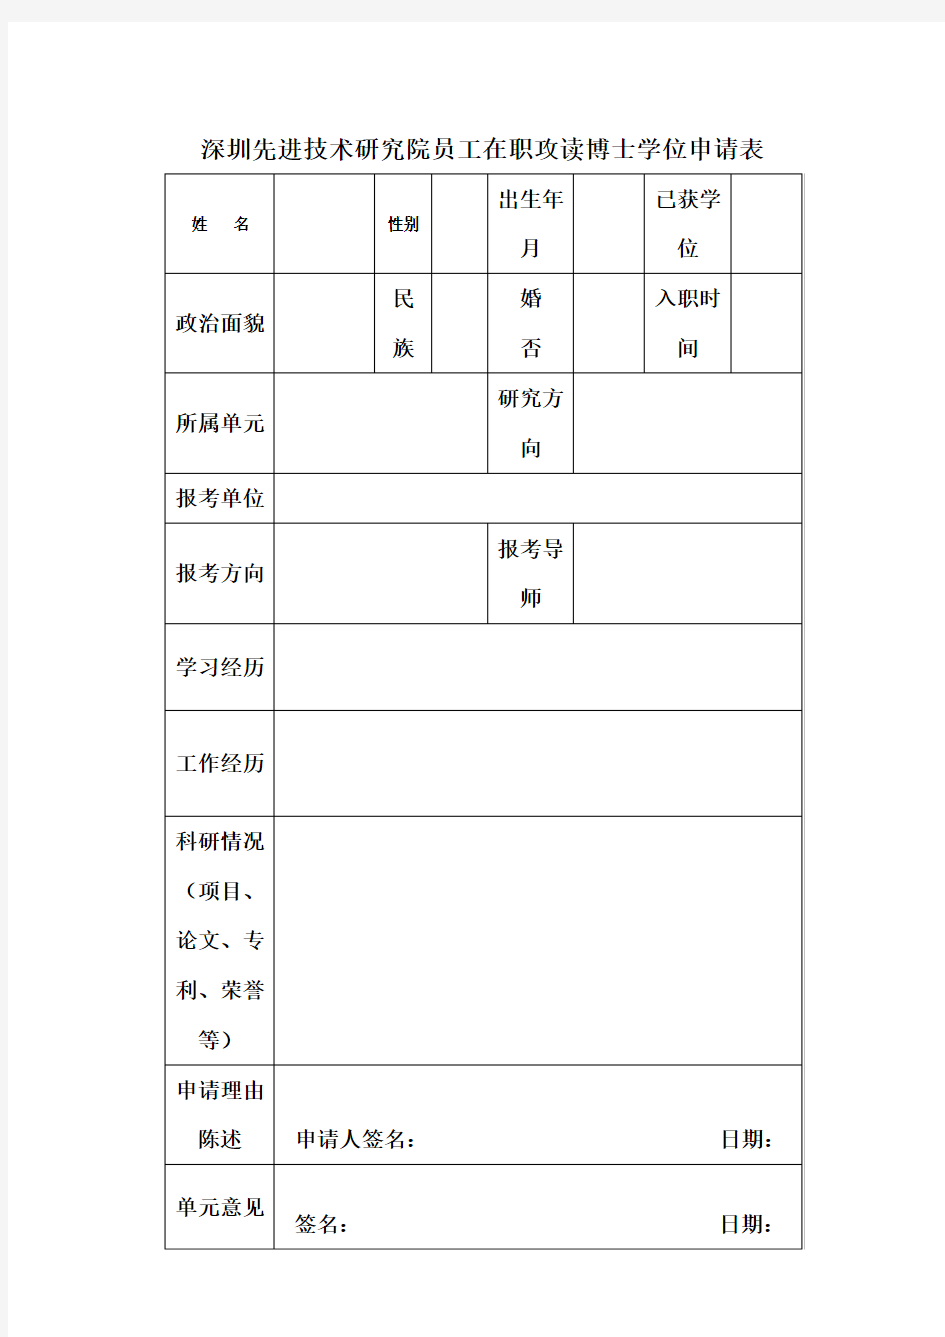 深圳先进技术研究院员工在职攻读博士学位申请表